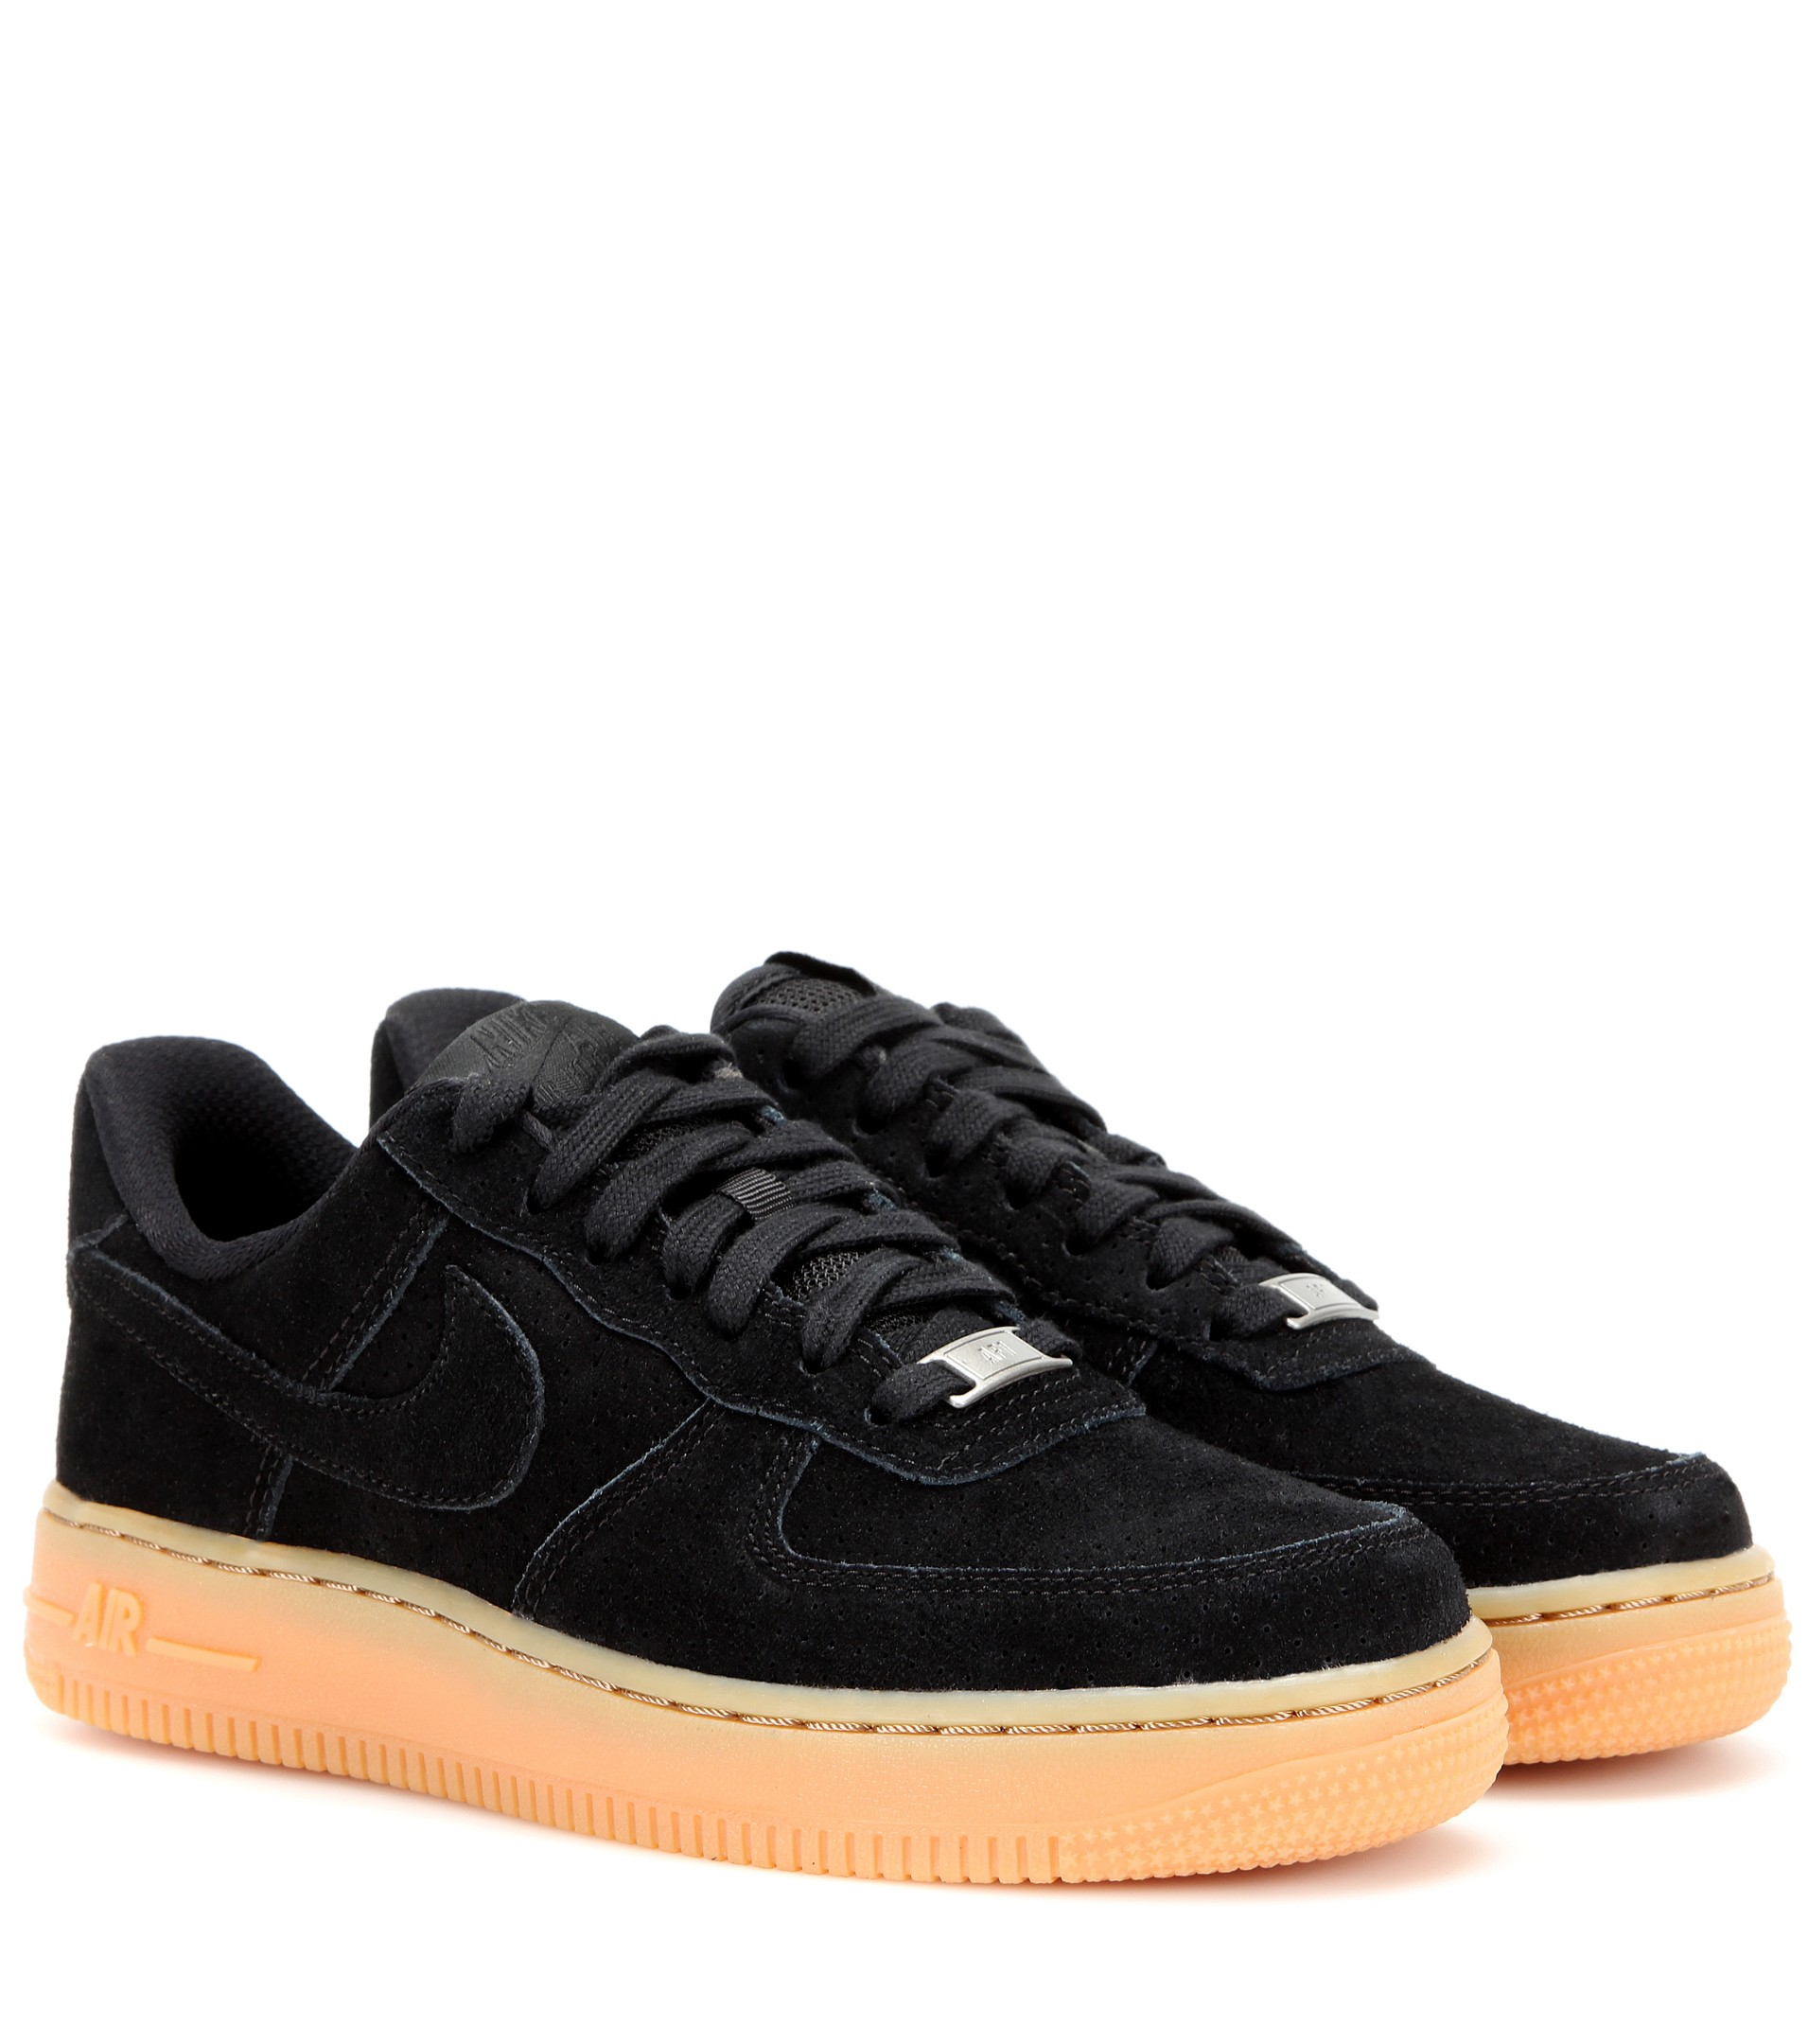 Nike Air Force 1 Suede Sneakers in Black/Black (Black) - Lyst